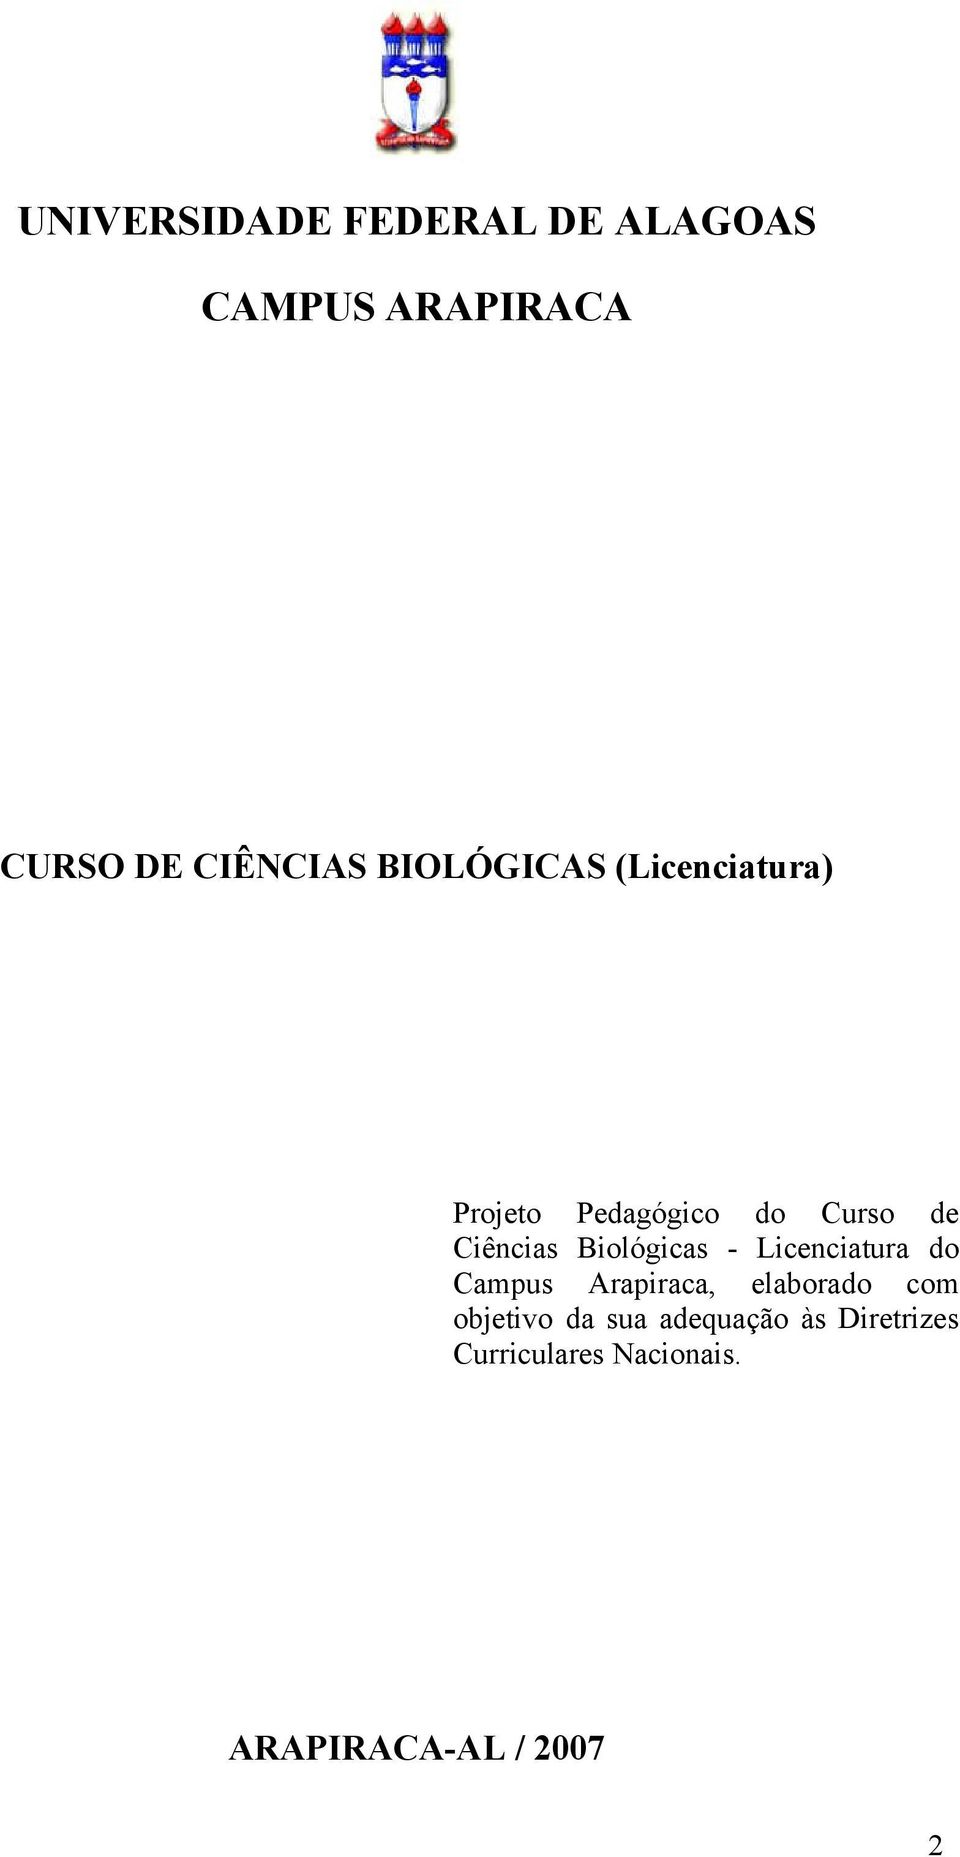 Biológicas - Licenciatura do Campus Arapiraca, elaborado com objetivo